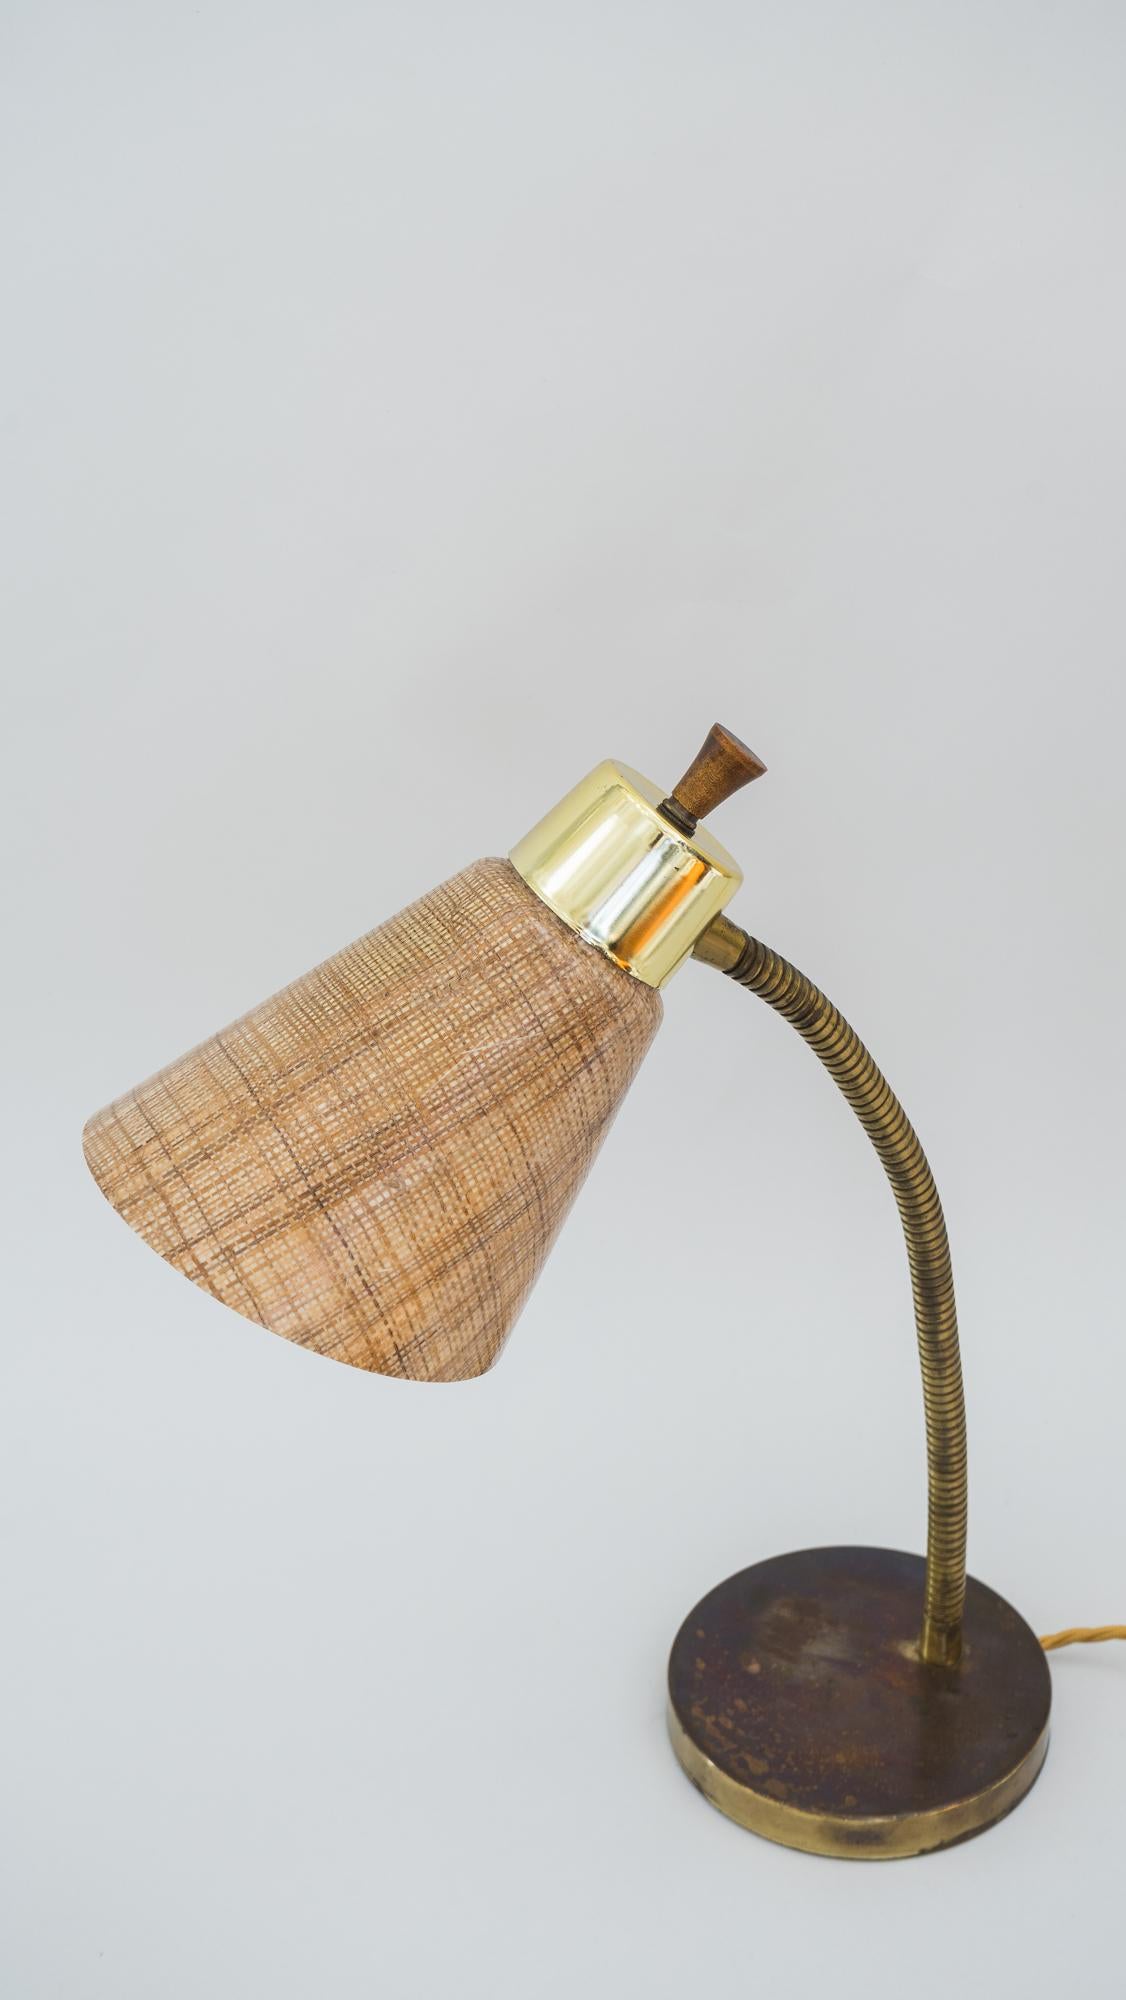 Vintage Tischlampe, italienisch, ca. 1960er Jahre
Polyester-Schirm
Ursprünglicher Zustand.